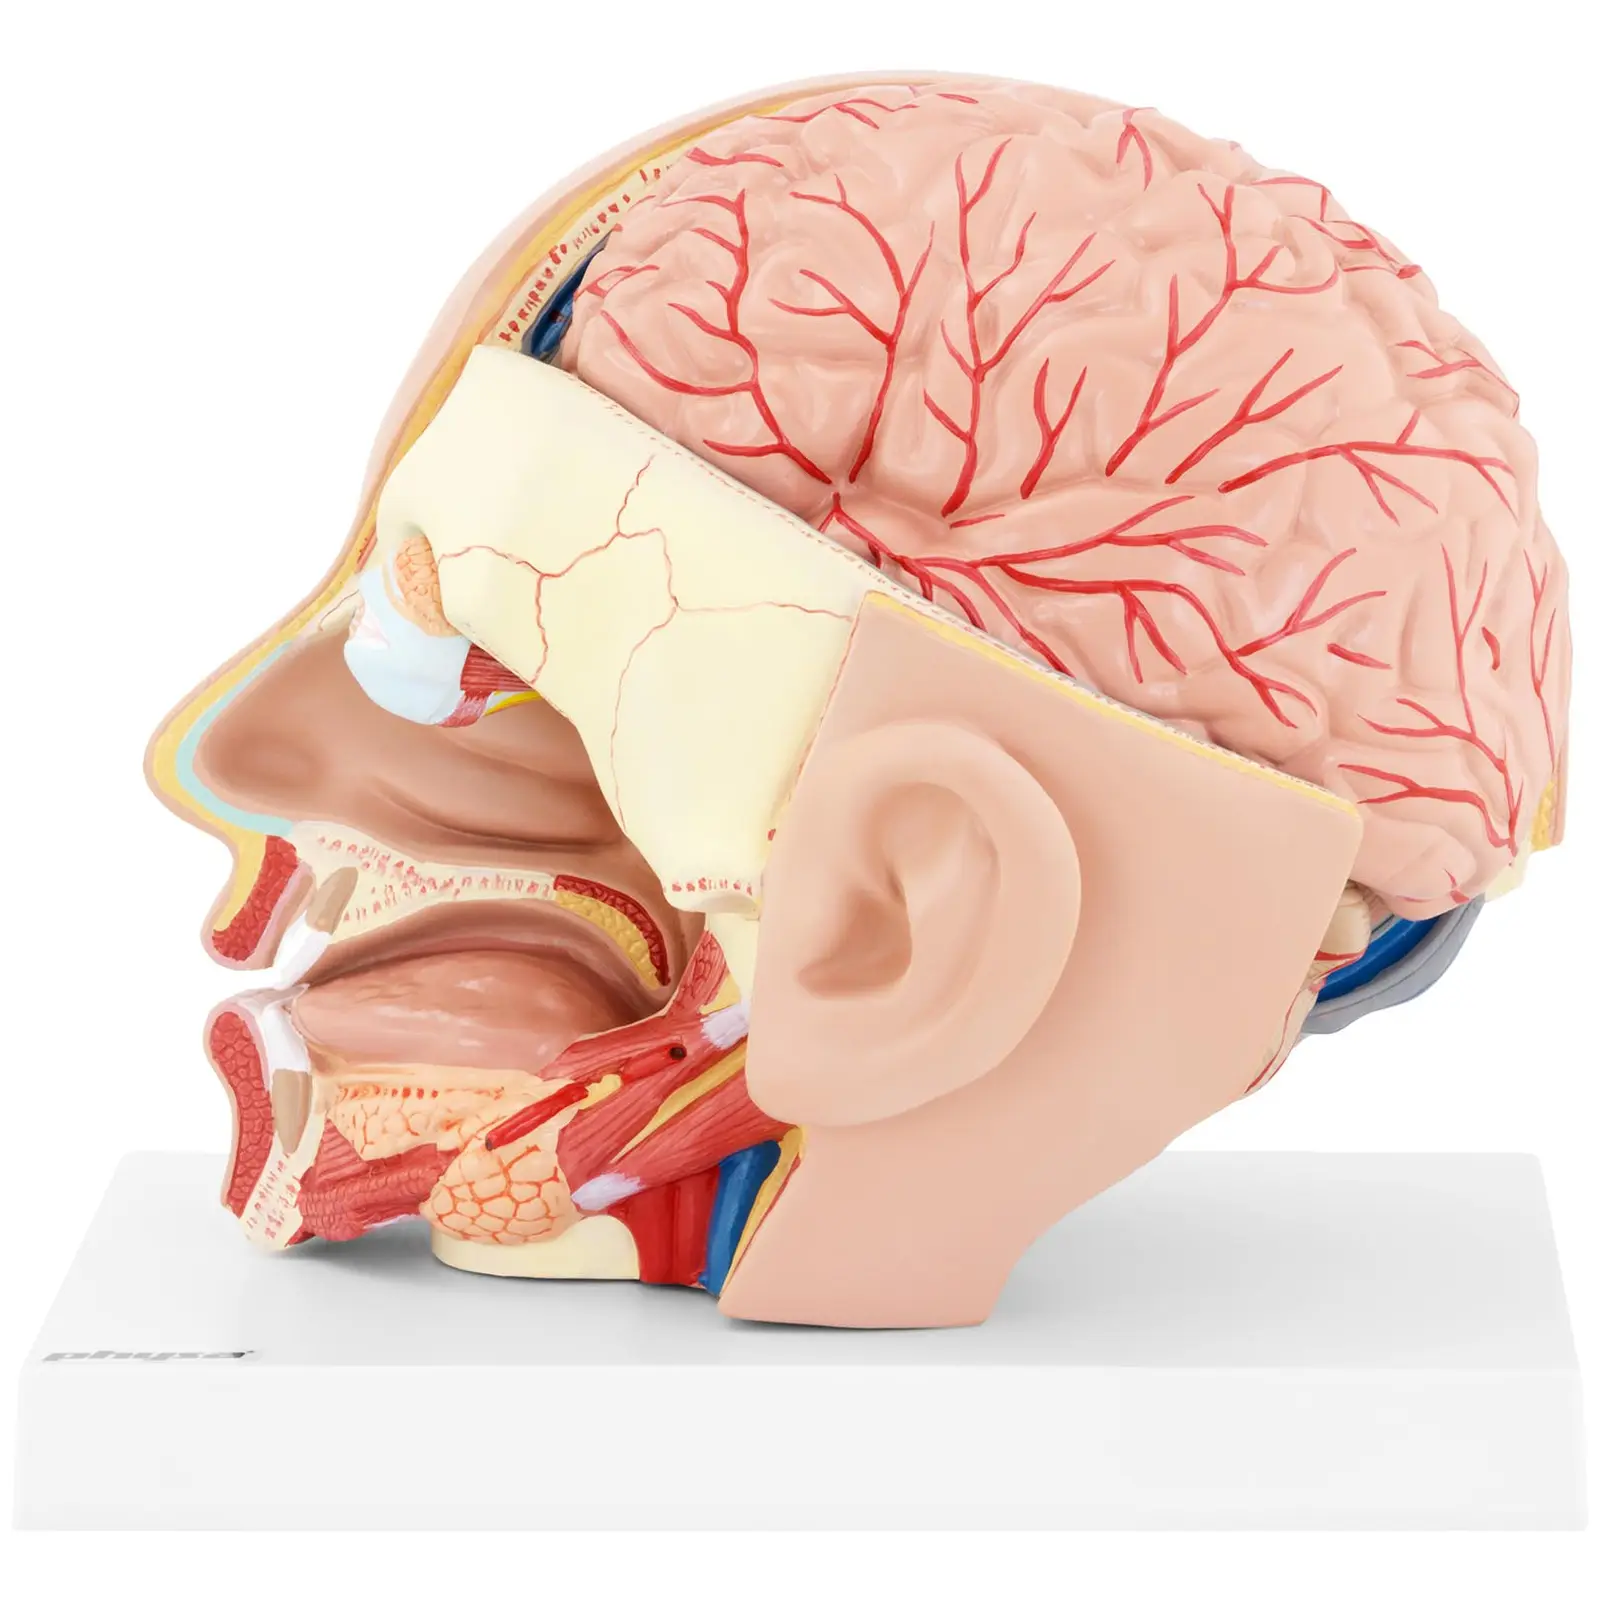 Maquette anatomique de la tête et du cerveau humain - En 4 parties amovibles - Grandeur nature